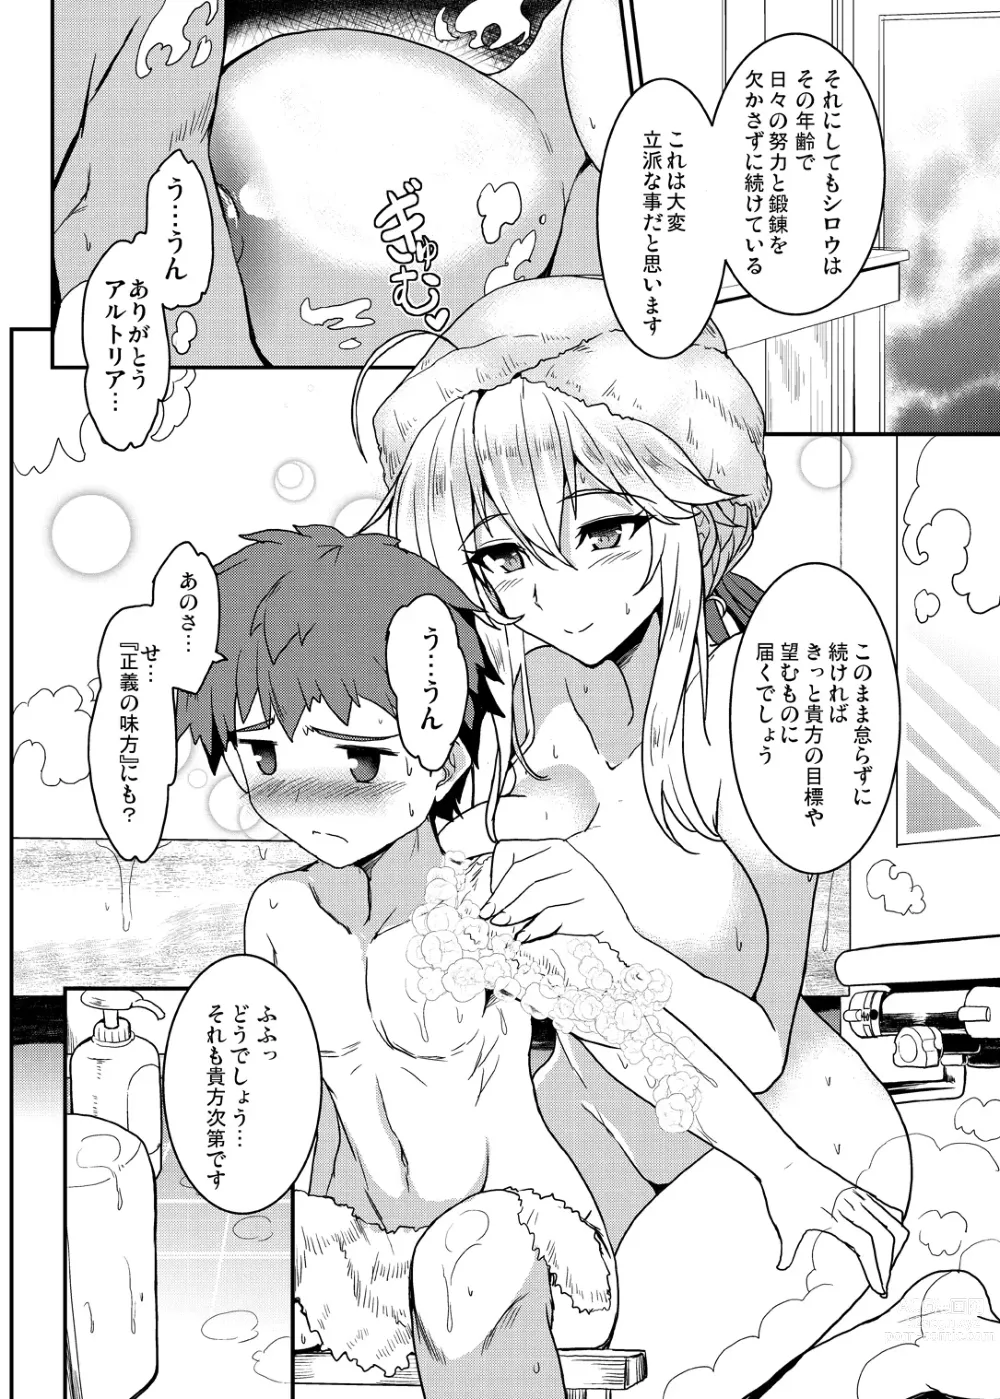 Page 10 of doujinshi Tonari no Chichiou-sama Memories Vol. 1